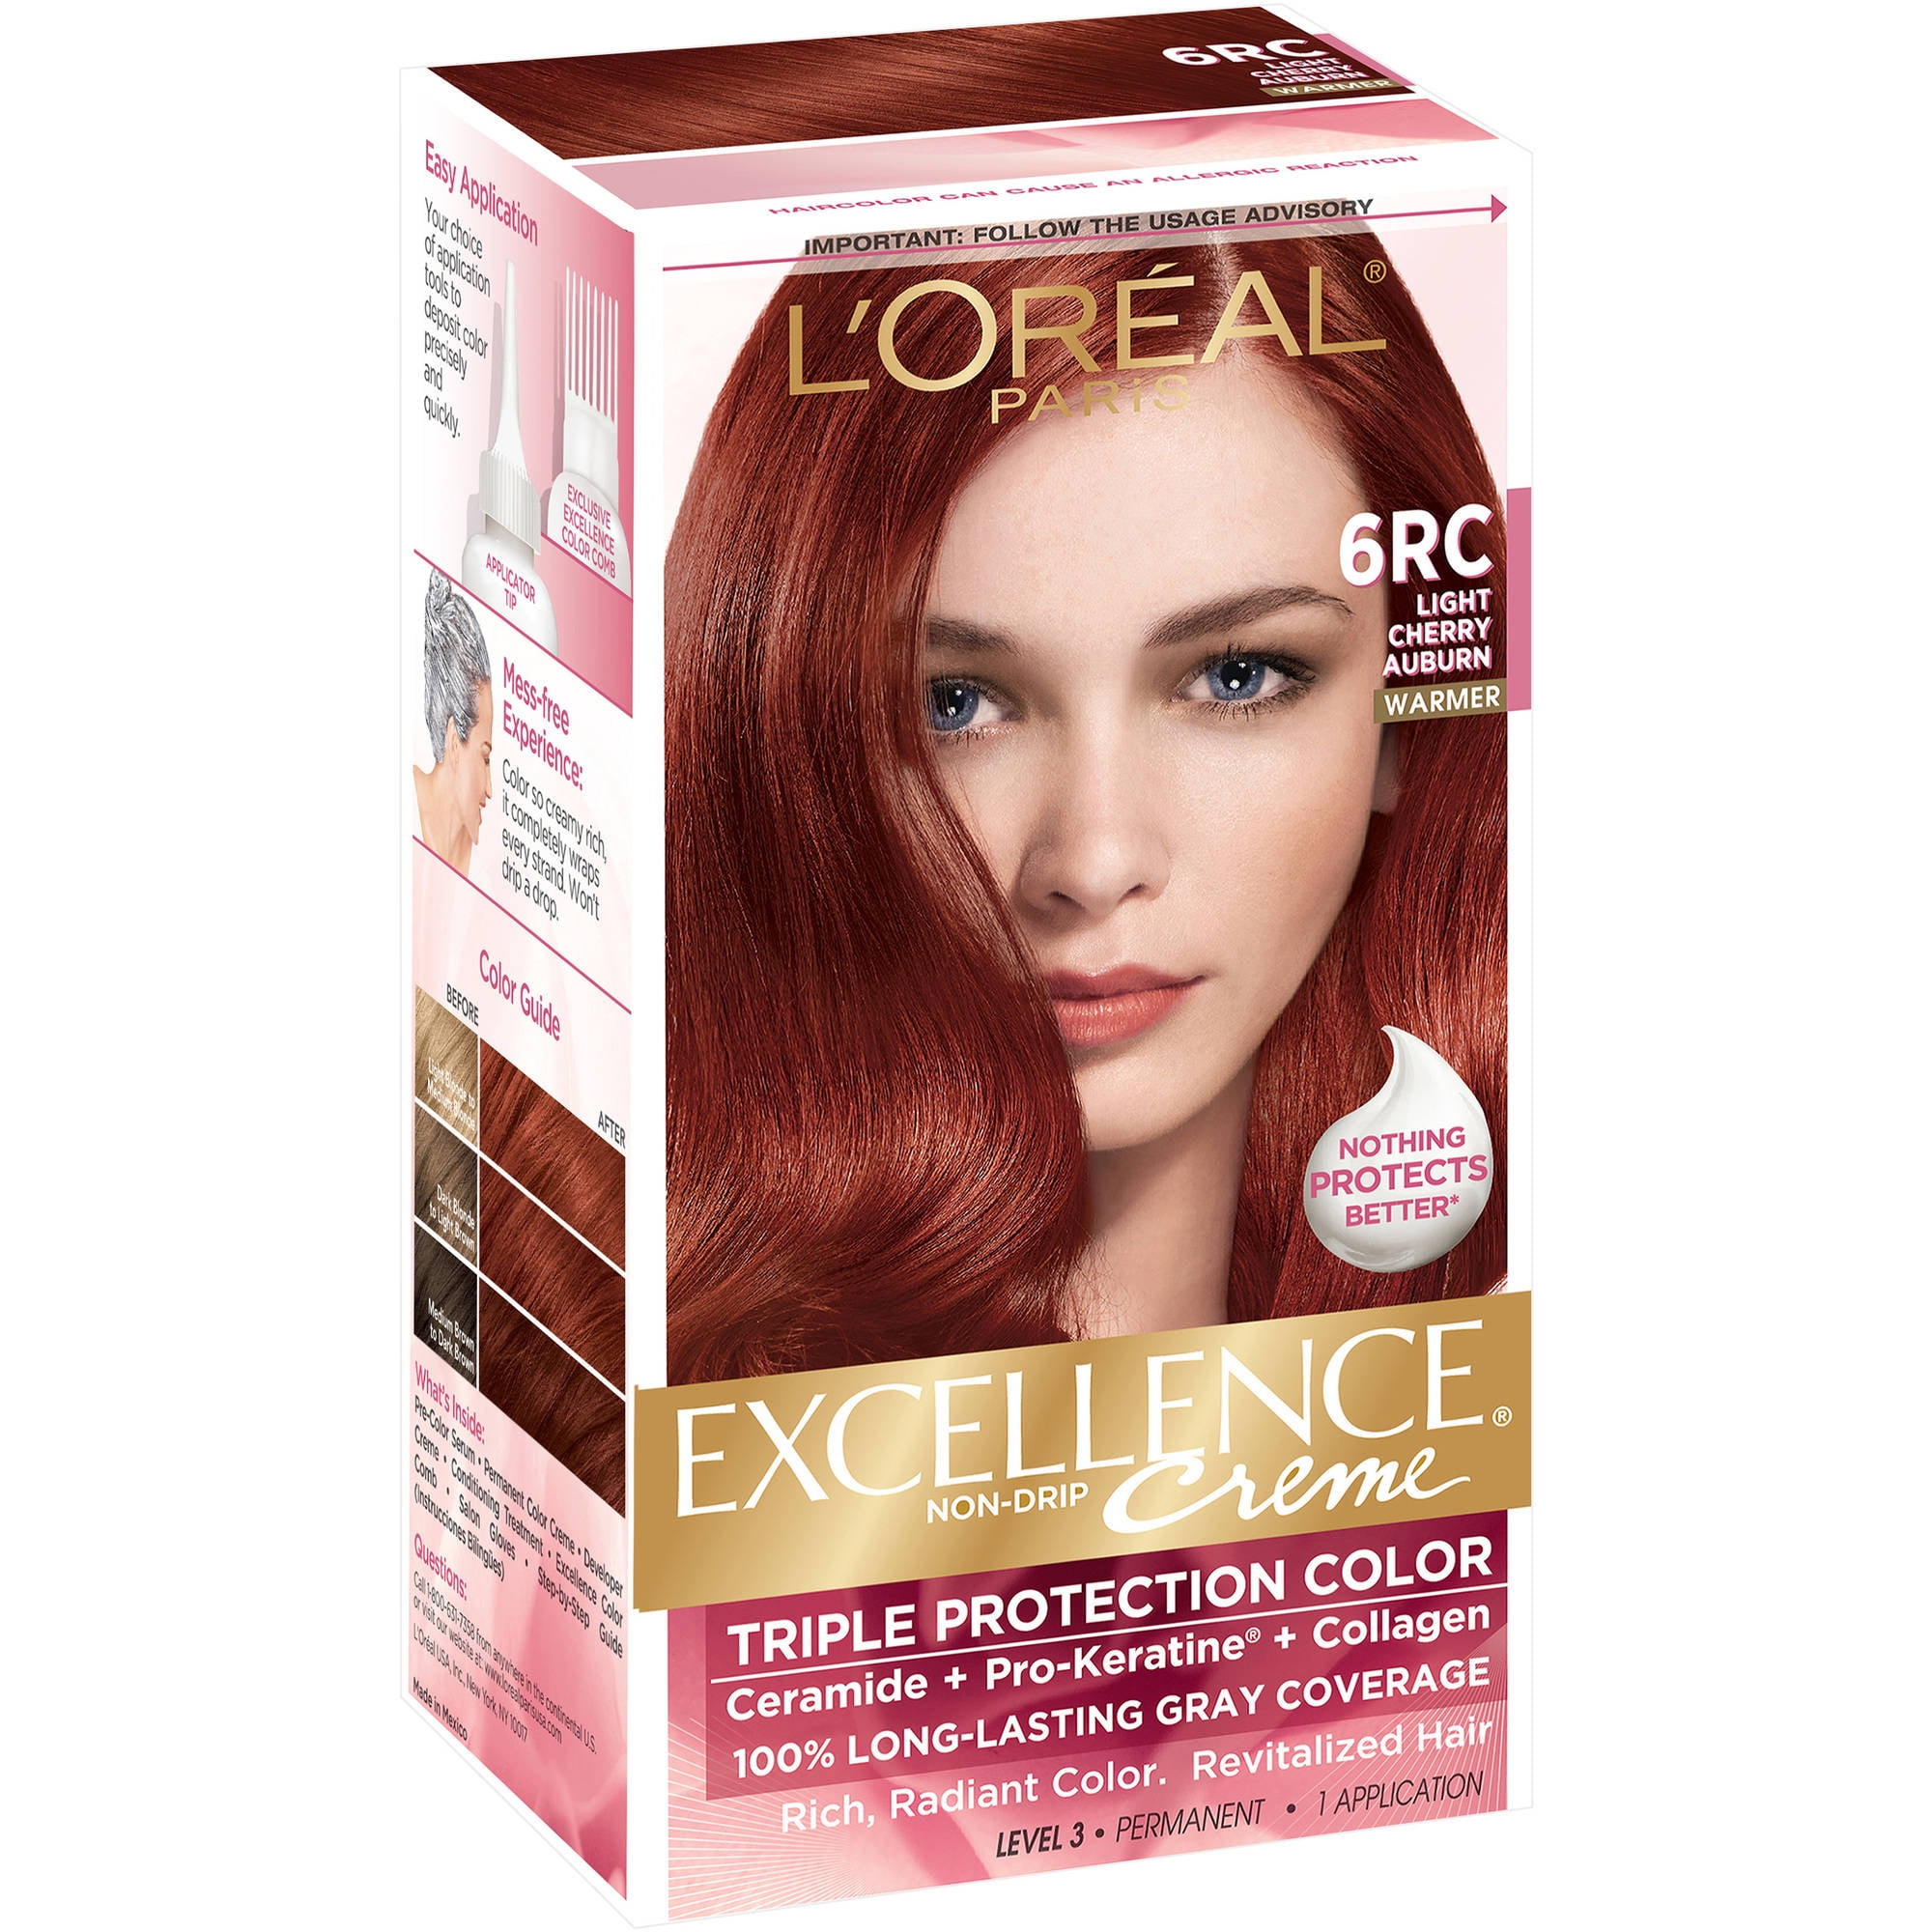 Loreal Paris Excellence Creme Permanent Triple Protection Hair Color 6rc Light Cherry Auburn 